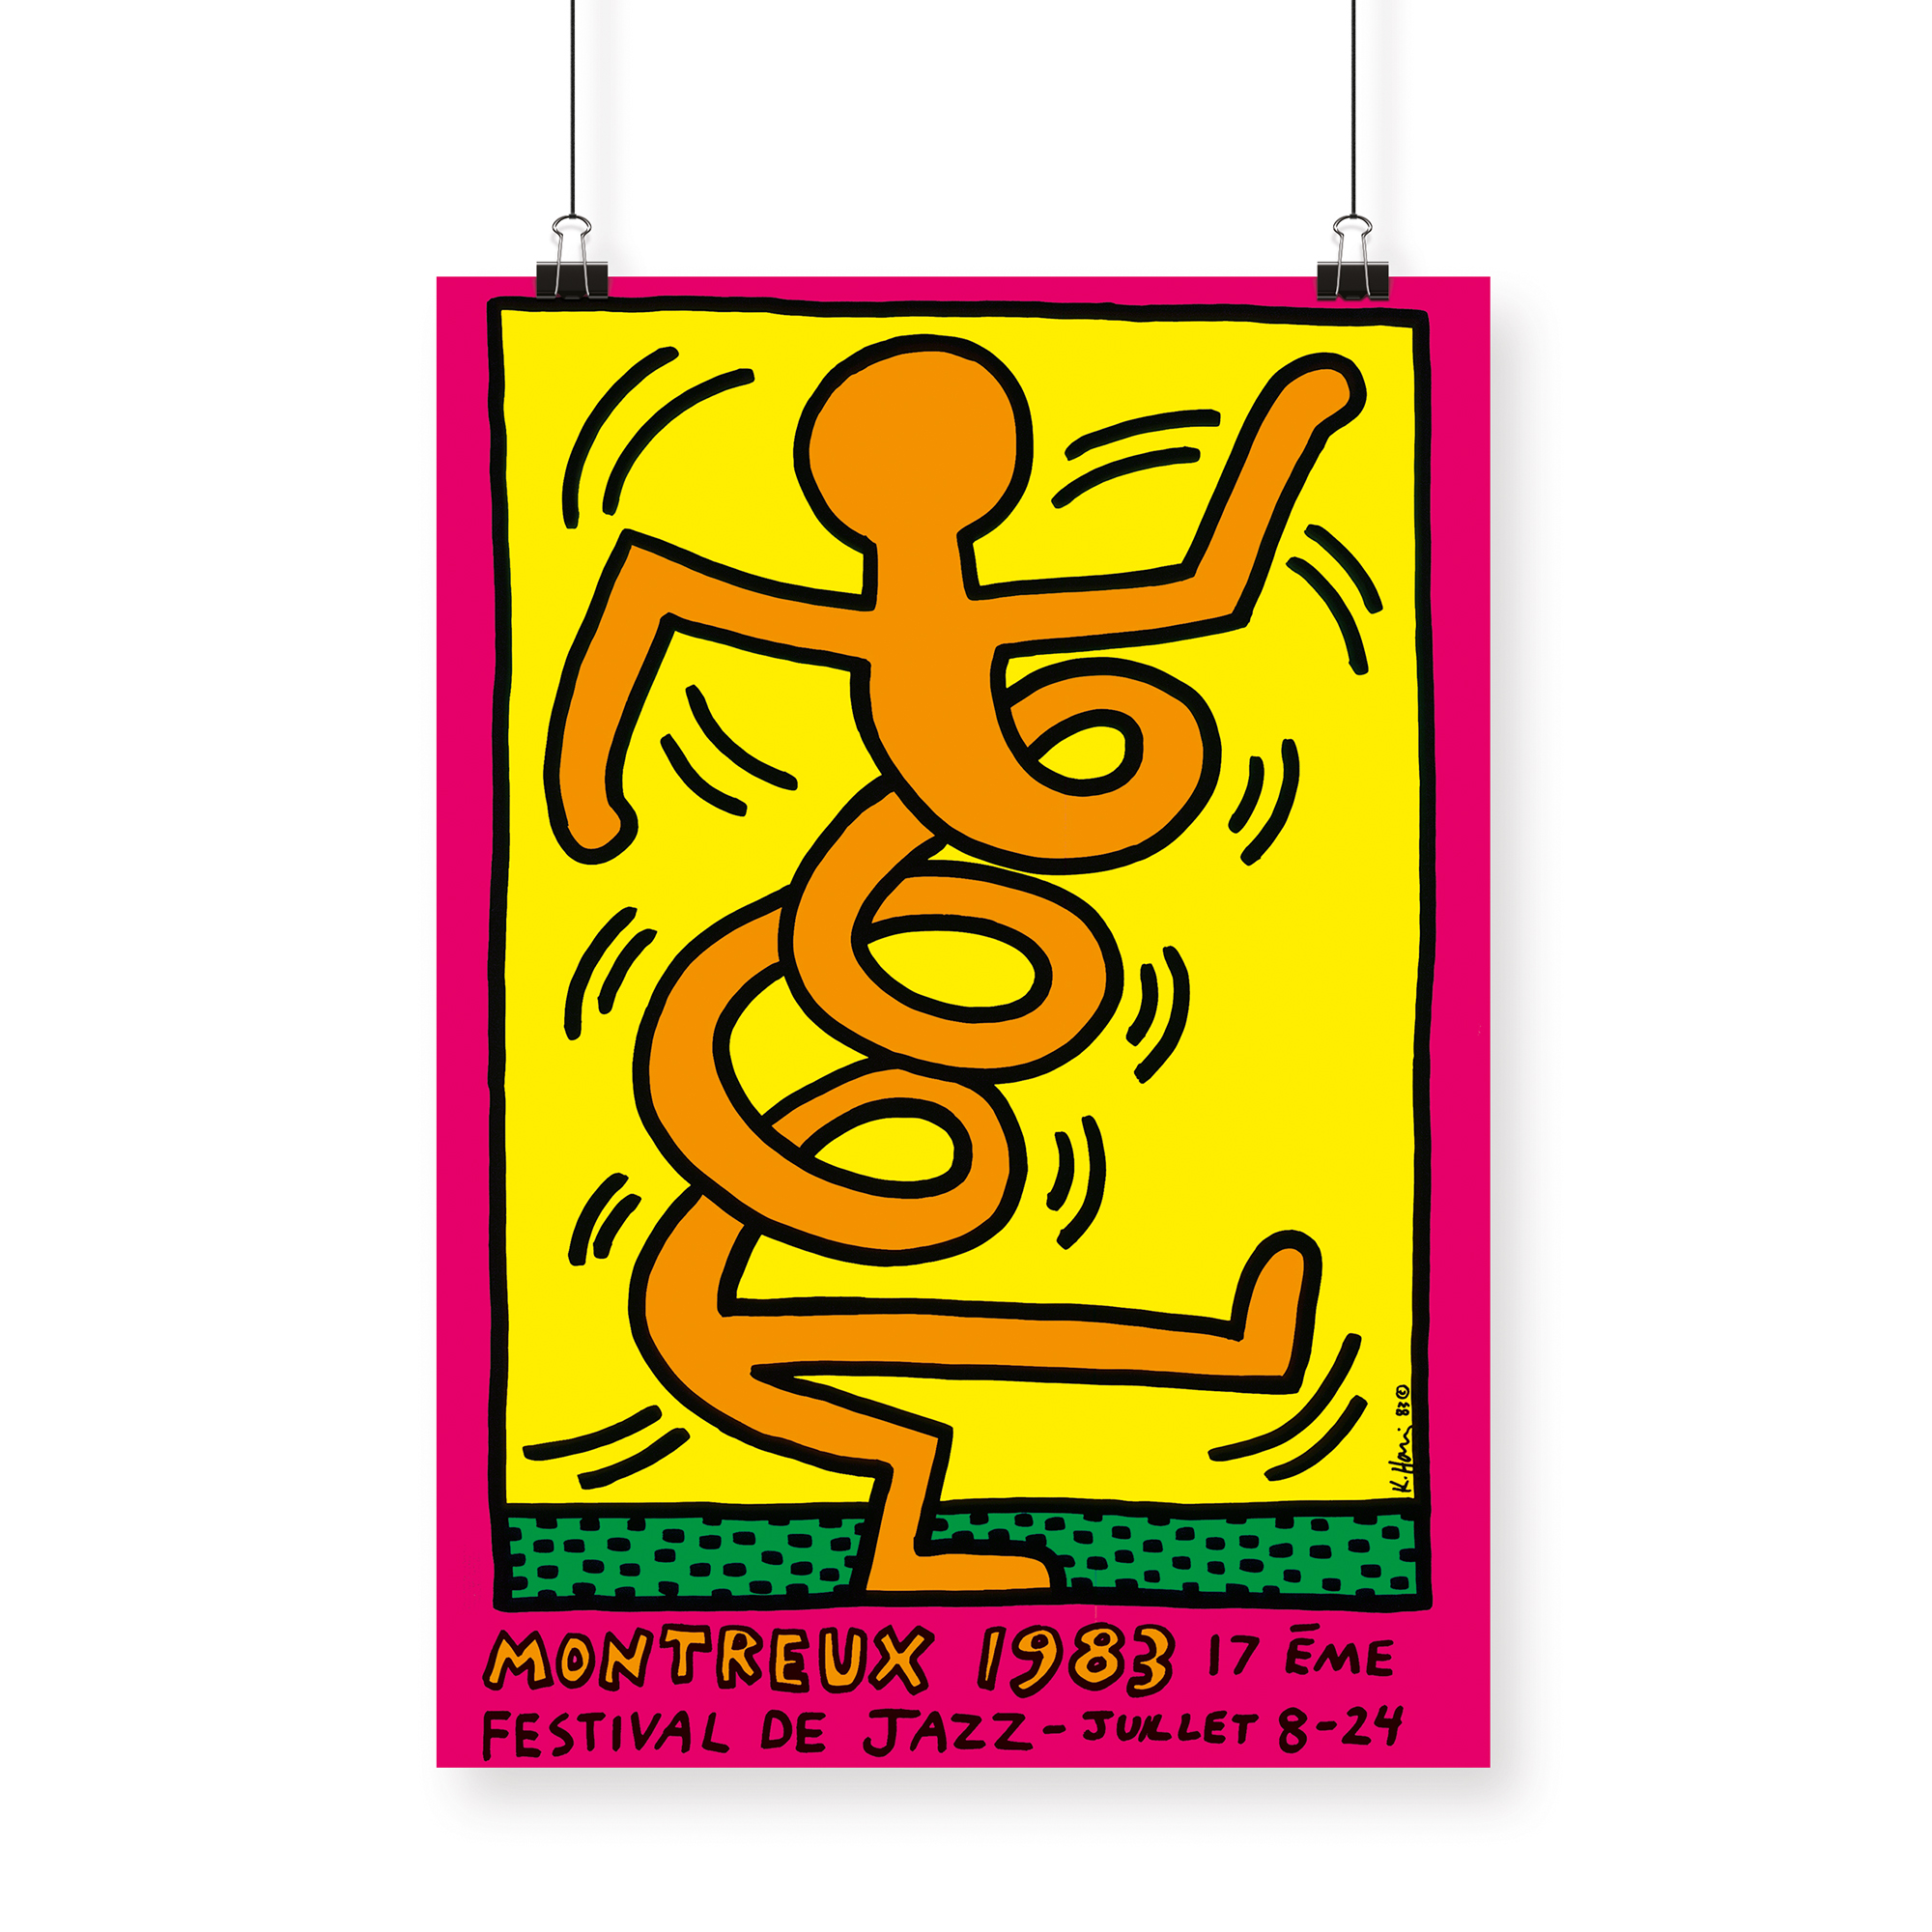 Il manifesto del Montreux Jazz Festival di Keith Haring del 1983. Mostra il disegno di un uomo stilizzato che si attorciglia su se stesso